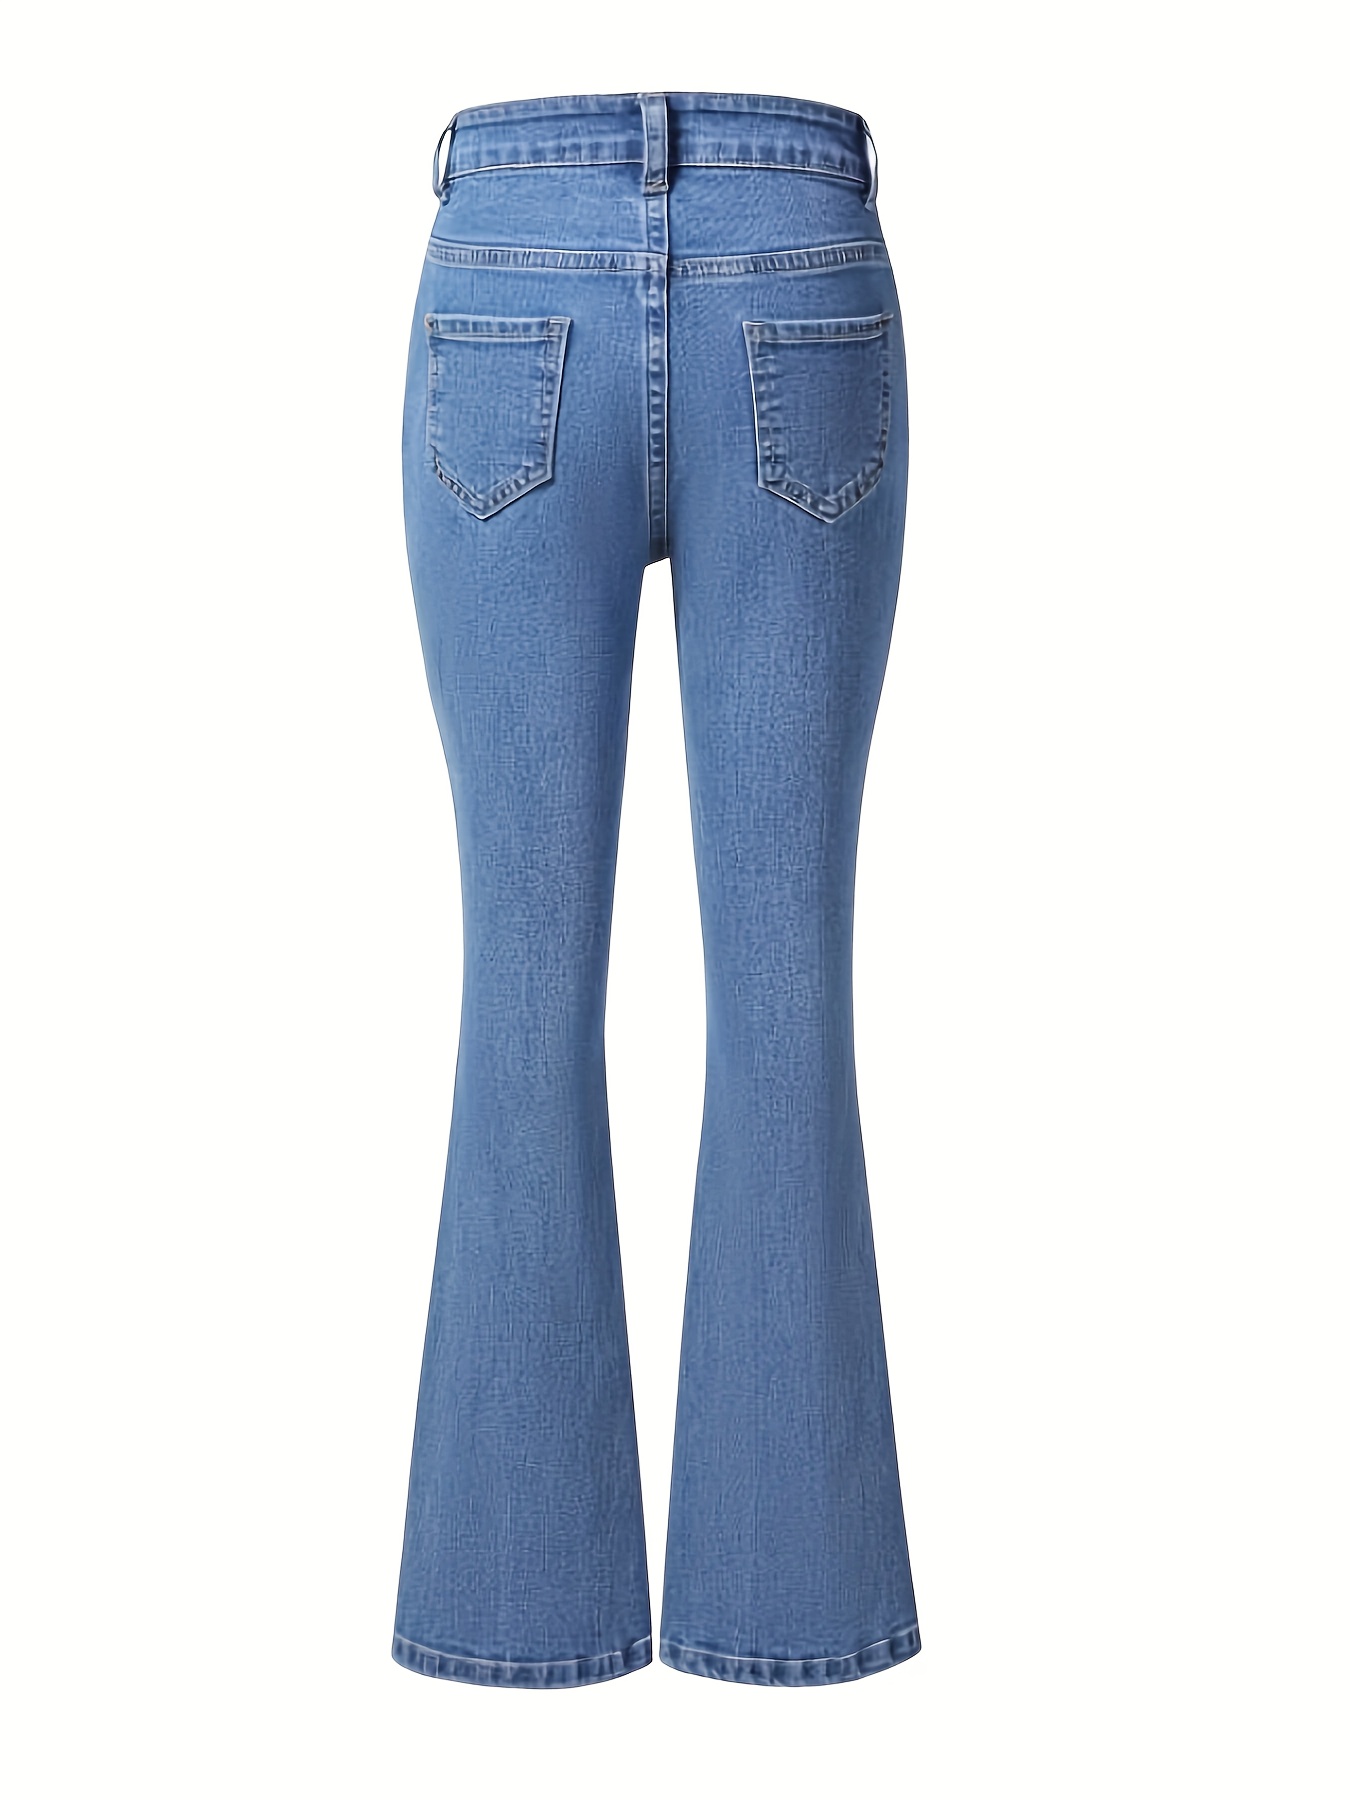 High Waist High Strech Light Blue Bootcut Jeans, Zipper Button Closure  Flare Leg Causal Denim Pants, Women's Denim Jeans & Clothing